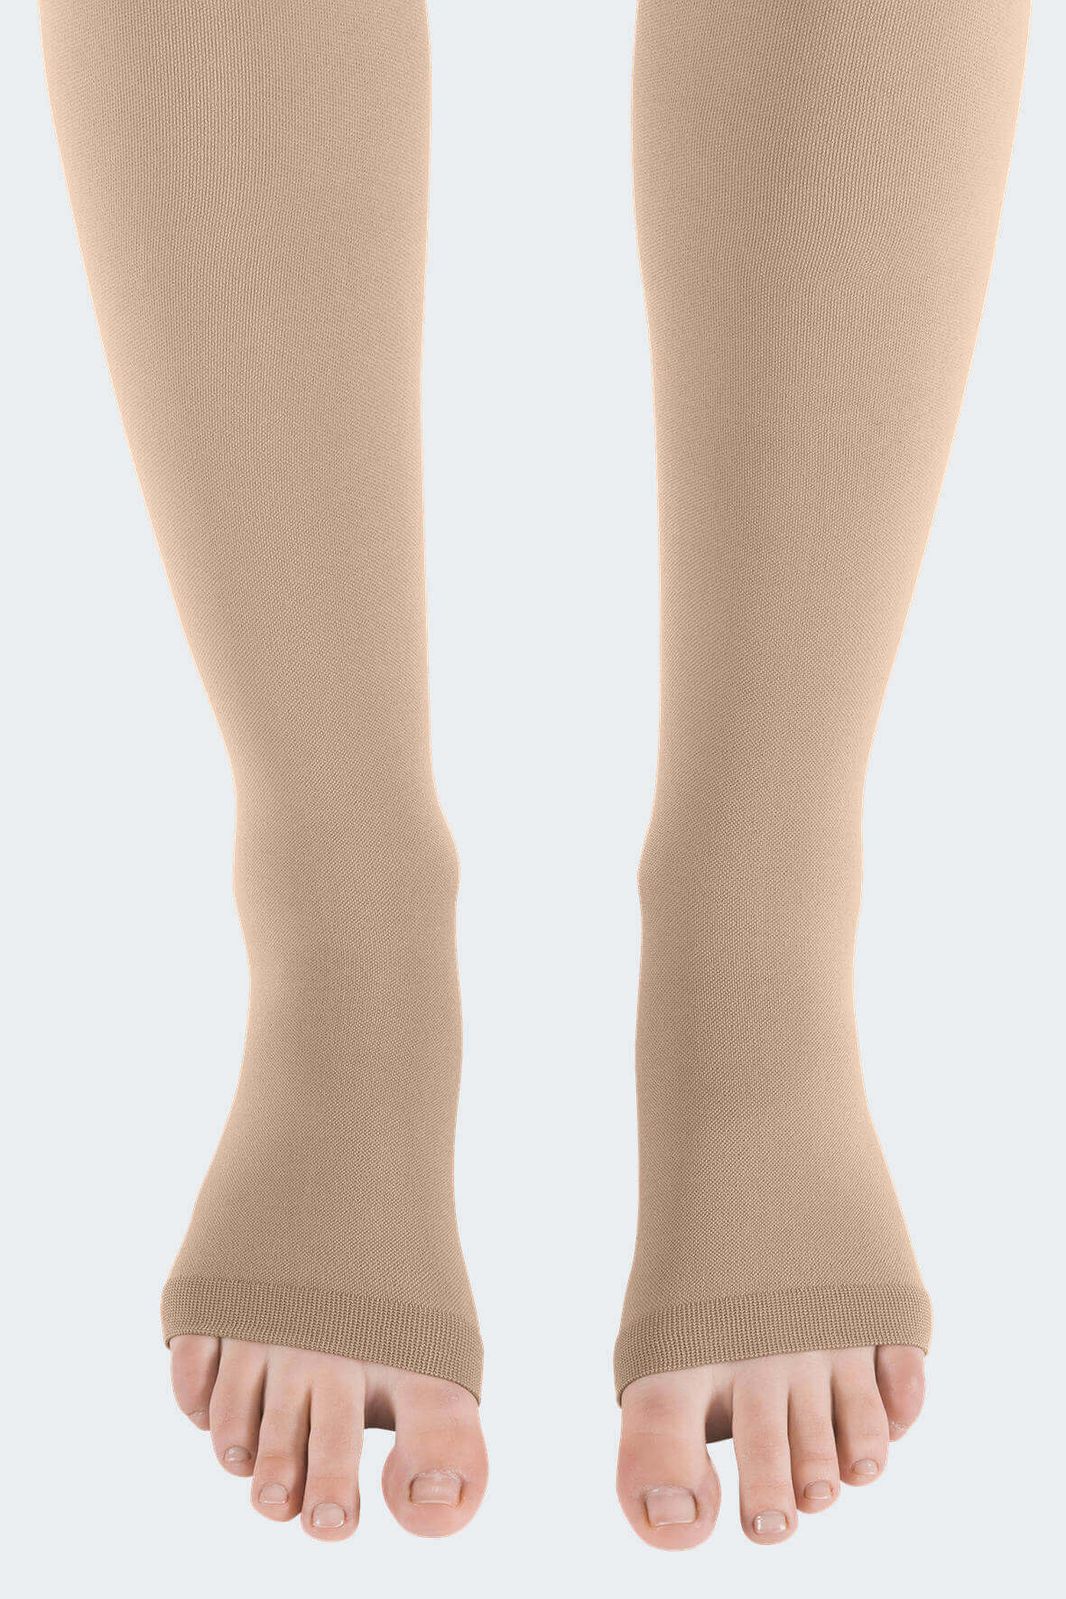 Панчохи компресійні на широке стегно Medi (Німеччина) mediven PLUS (2 клас компресії) бежеві, короткі, відкритий носок, розмір 3